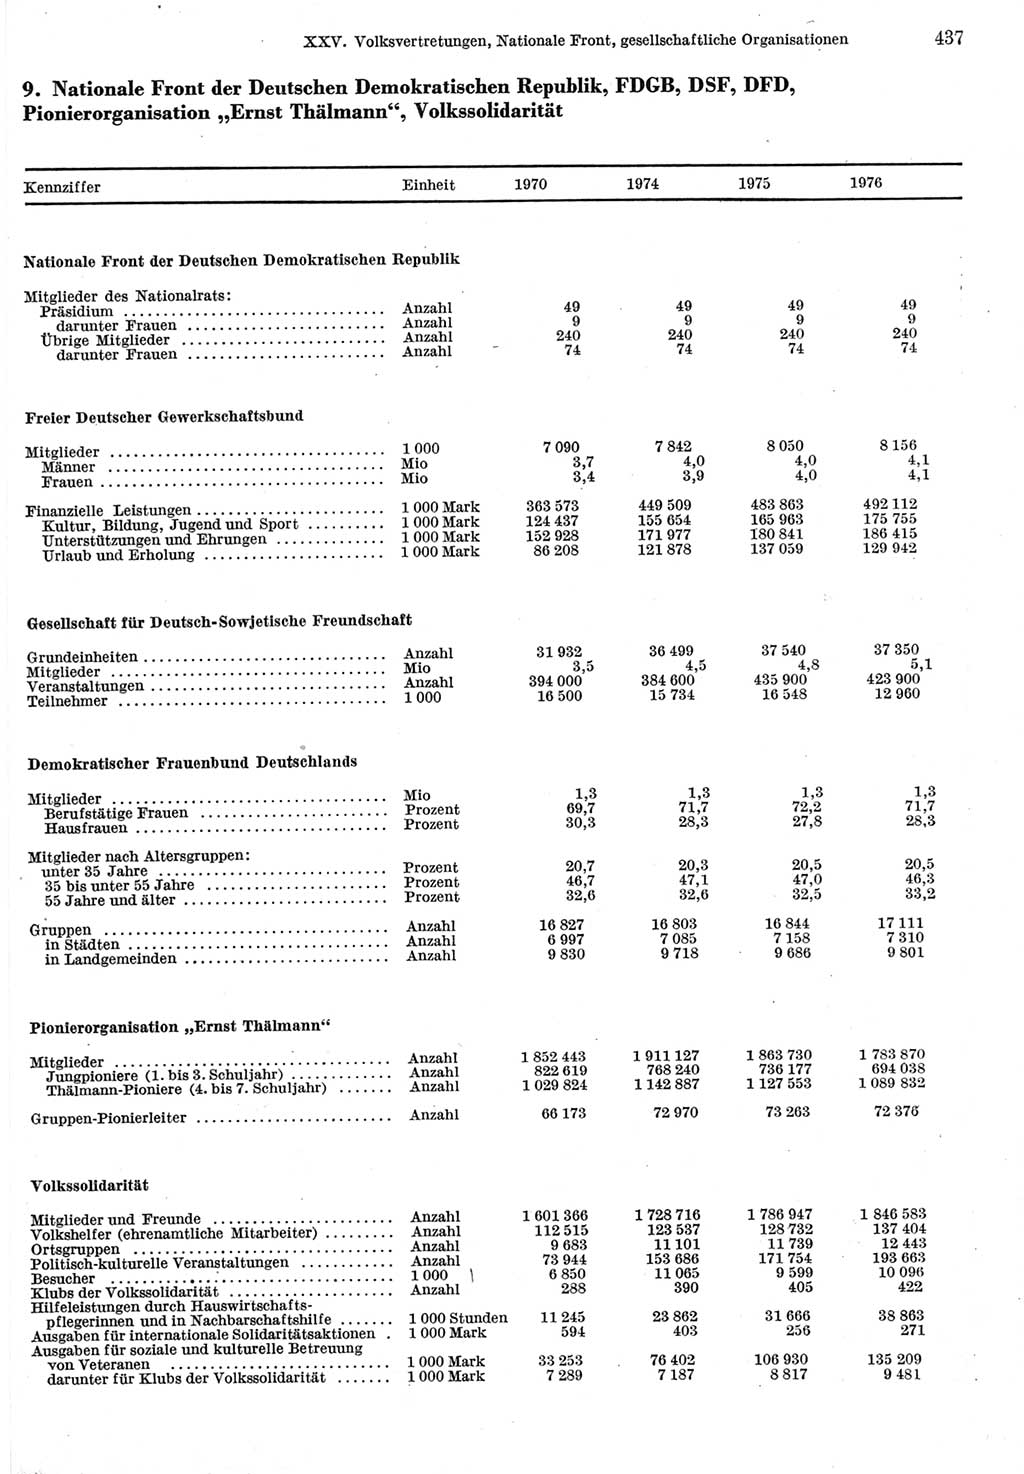 Statistisches Jahrbuch der Deutschen Demokratischen Republik (DDR) 1977, Seite 437 (Stat. Jb. DDR 1977, S. 437)